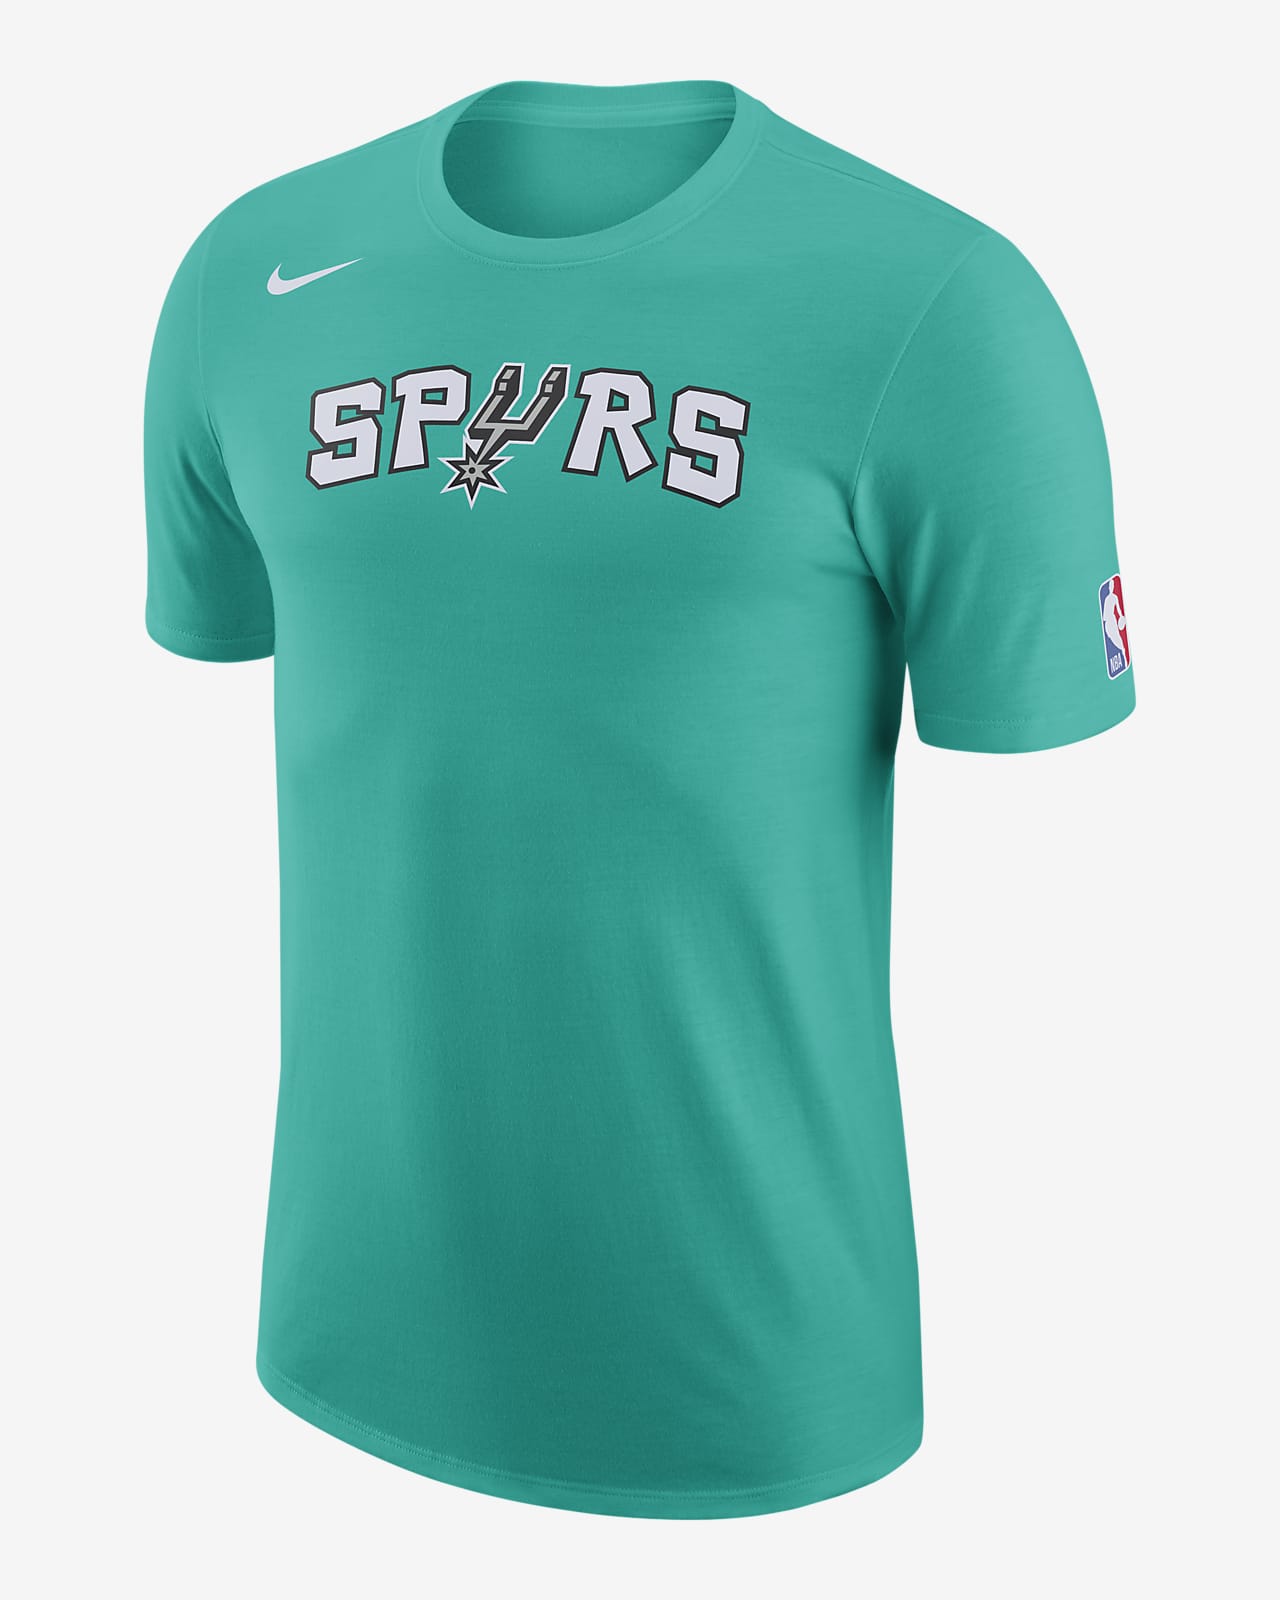 Playera con logotipo de la NBA Nike para hombre San Antonio Spurs City Edition